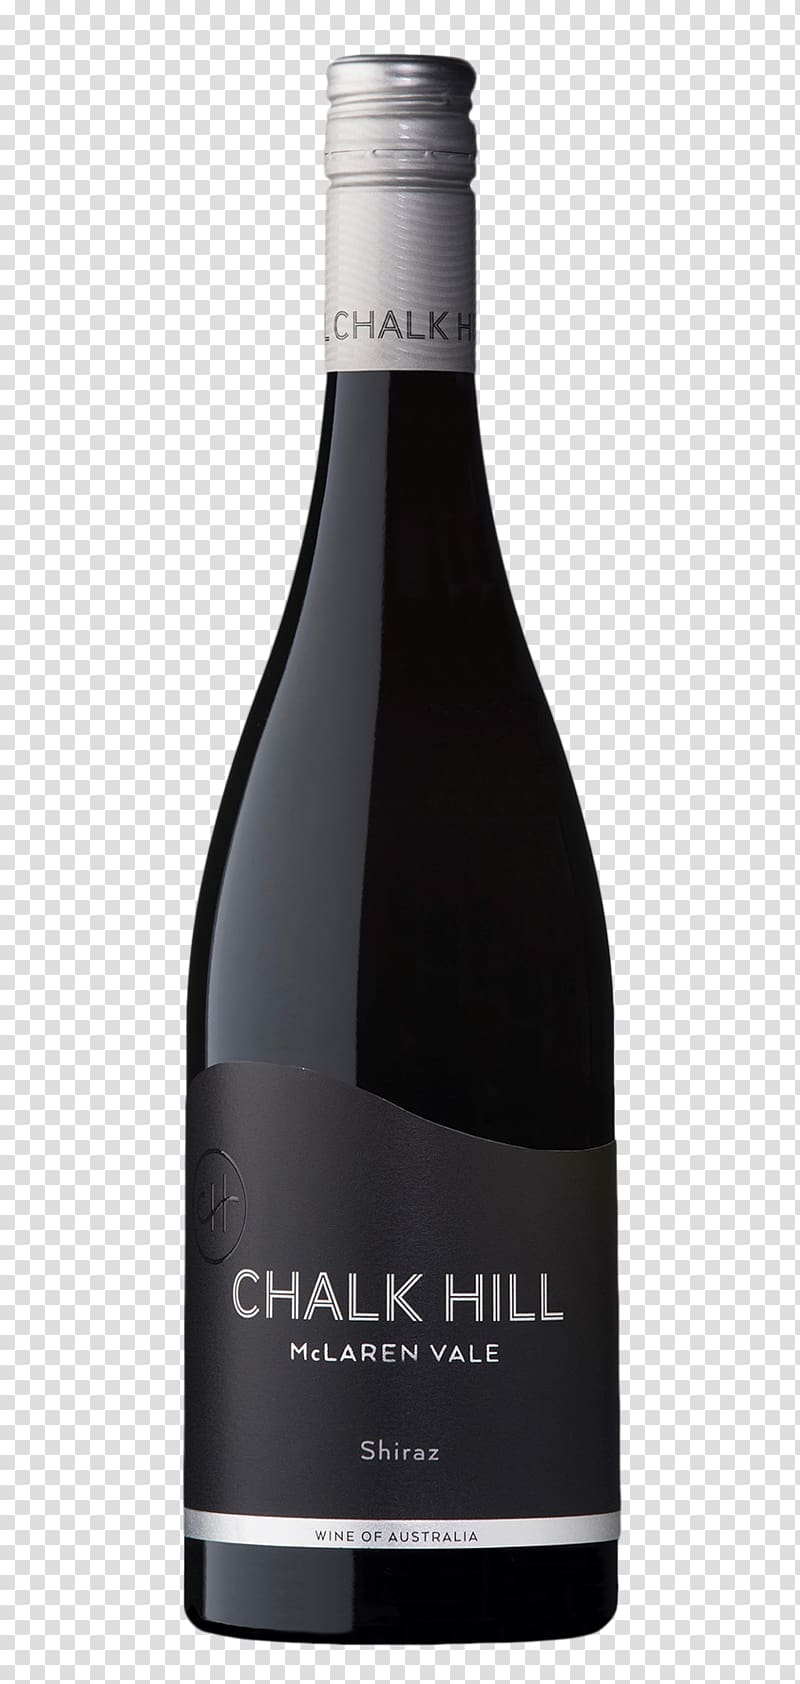 Sparkling wine Shiraz Cabernet Sauvignon McLaren Vale, wine transparent background PNG clipart